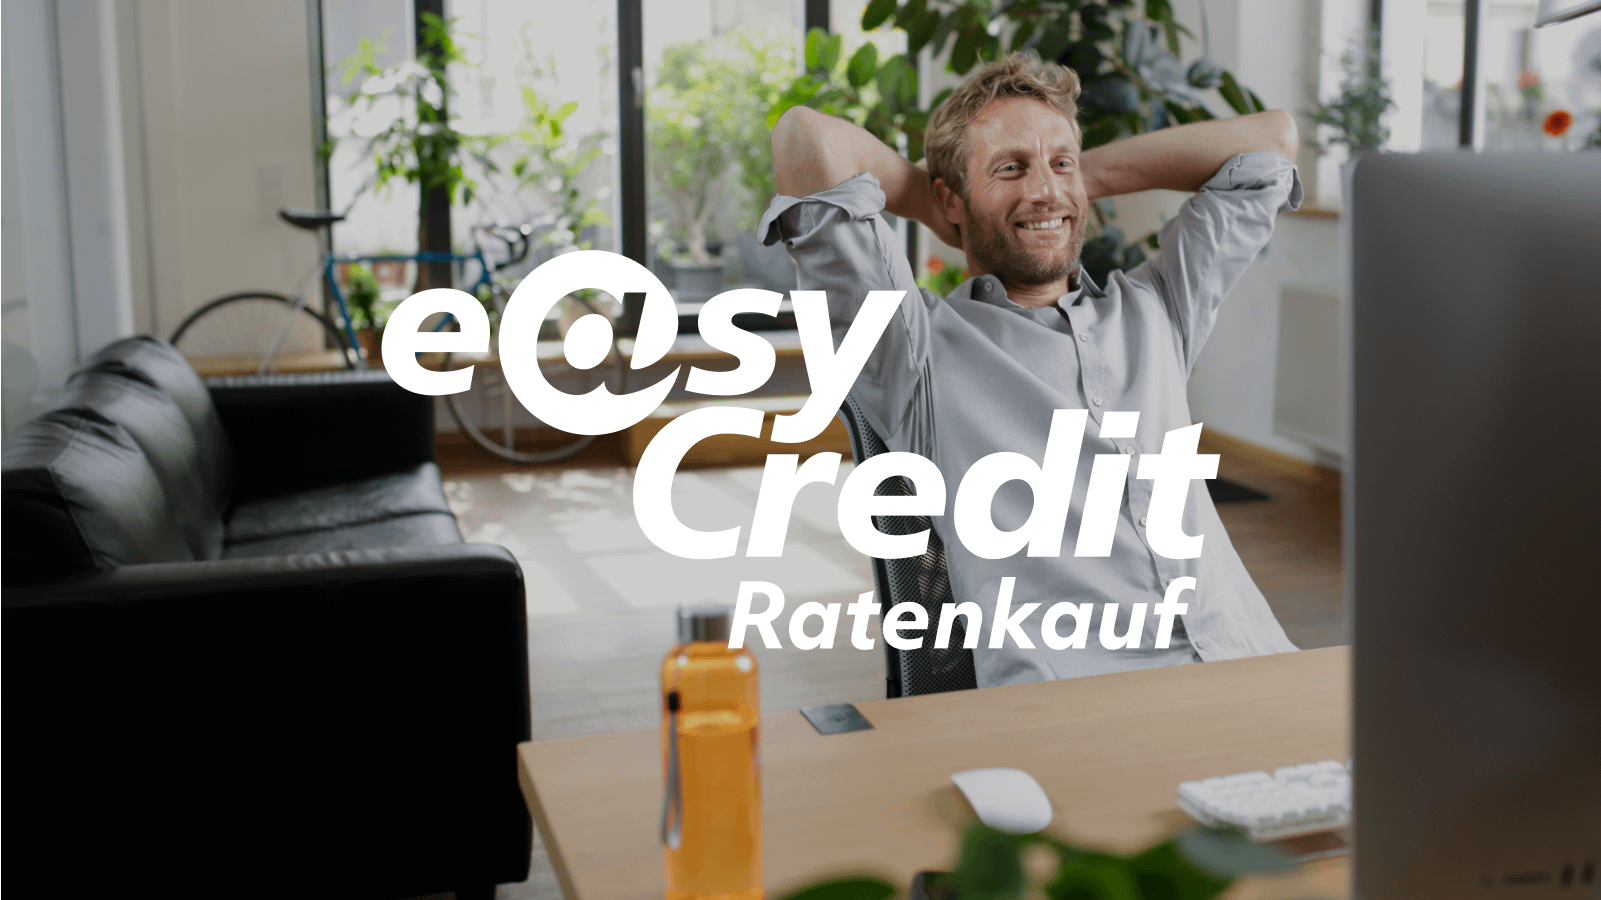 (c) Easycredit-ratenkauf.de